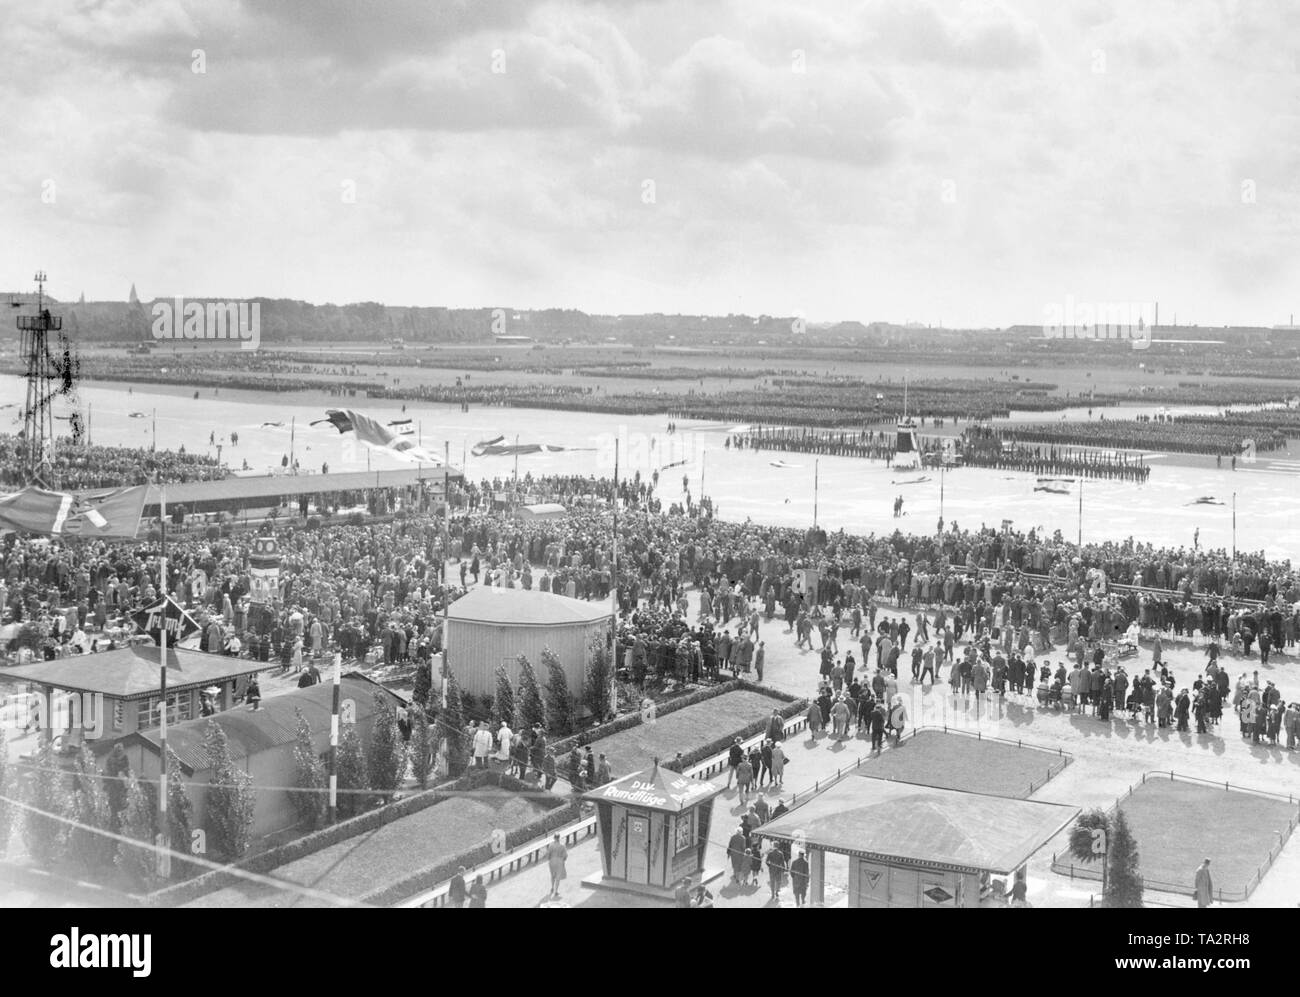 Der Stahlhelm, organisierte eine große Kundgebung auf dem Tempelhofer Feld. Das Foto zeigt die Spalten aufgereiht auf dem Flugplatz. Stockfoto